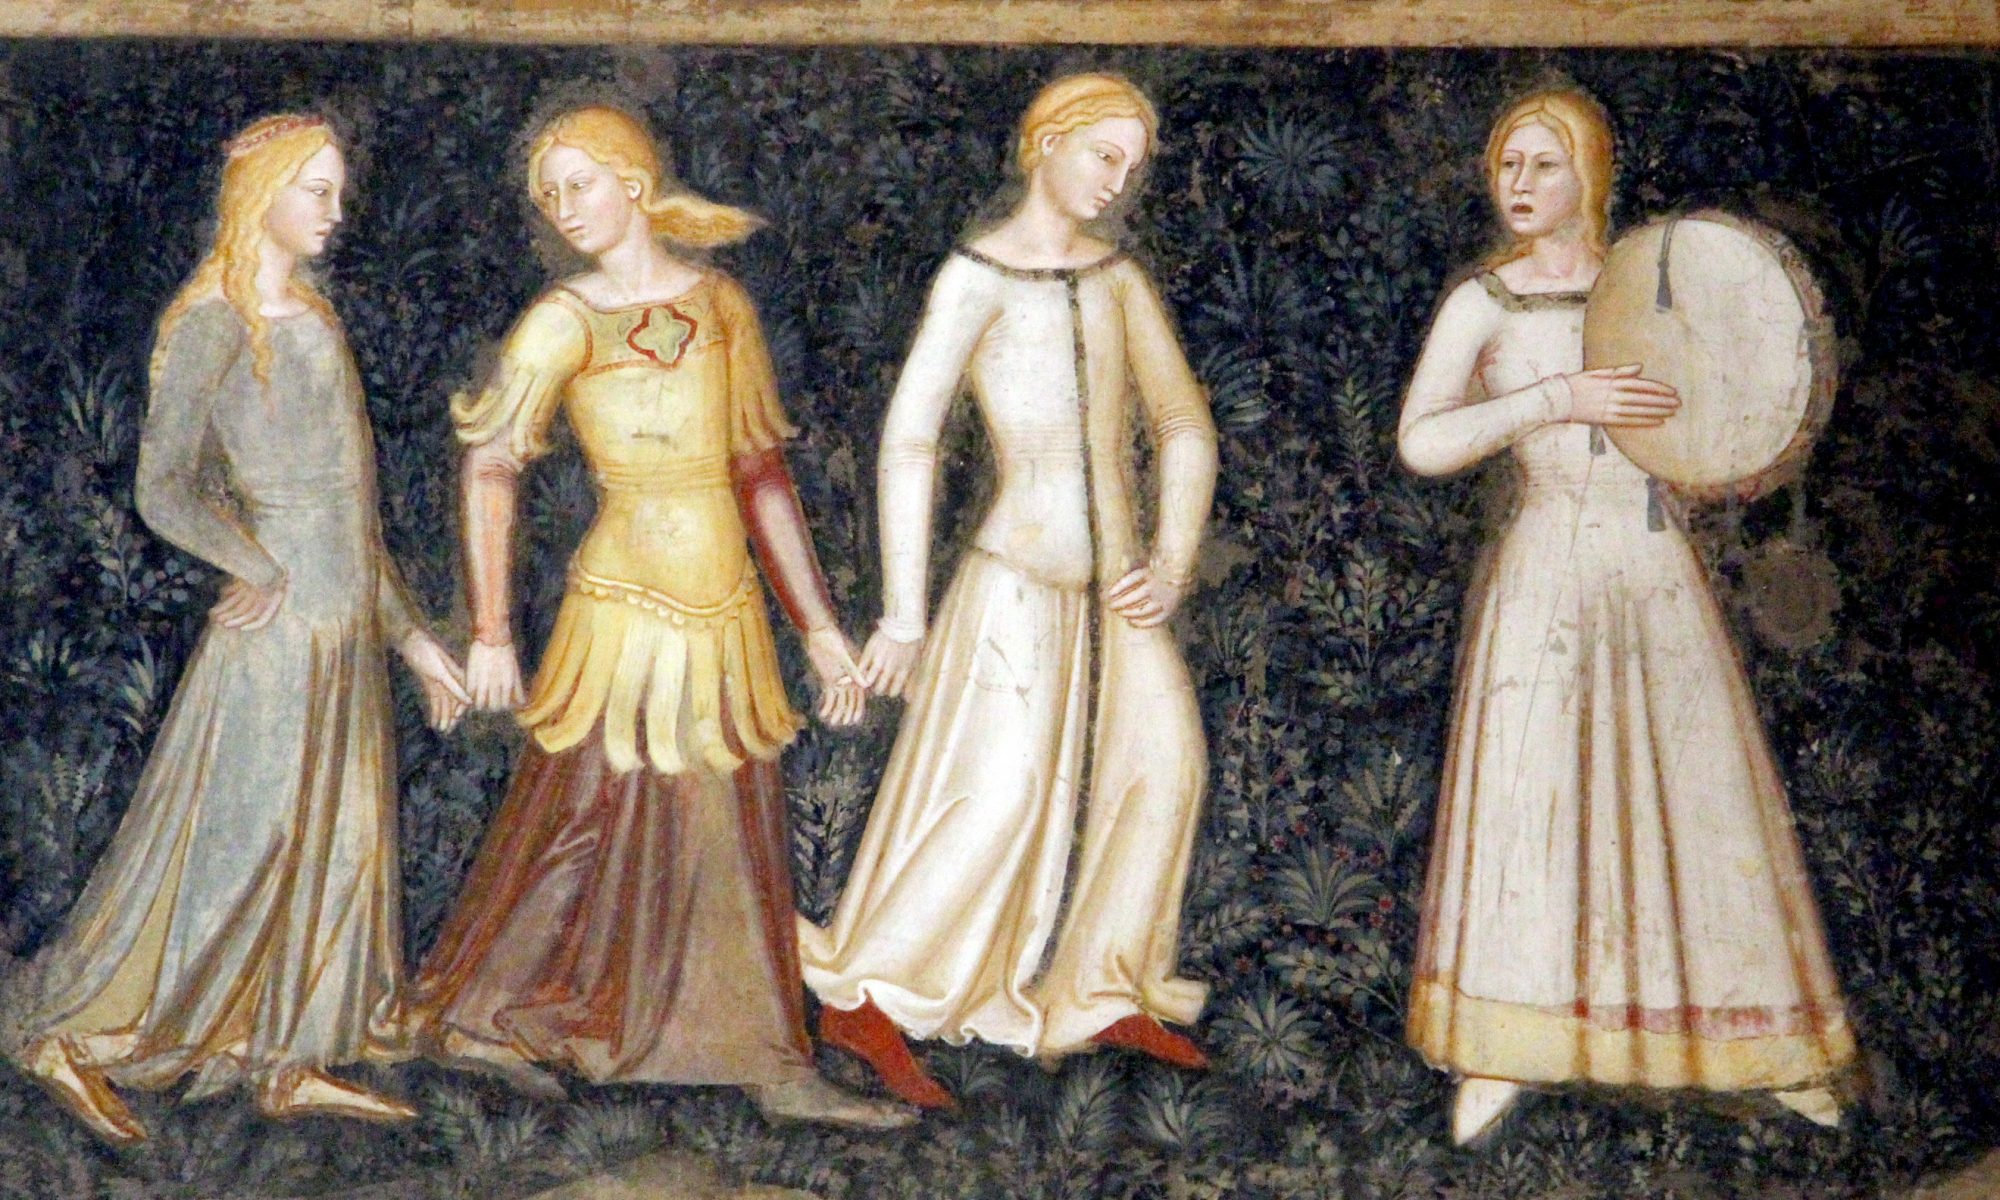 Srednjovekovne dvorske dame sledile su poziv – detalj s freske di Bonaiuta